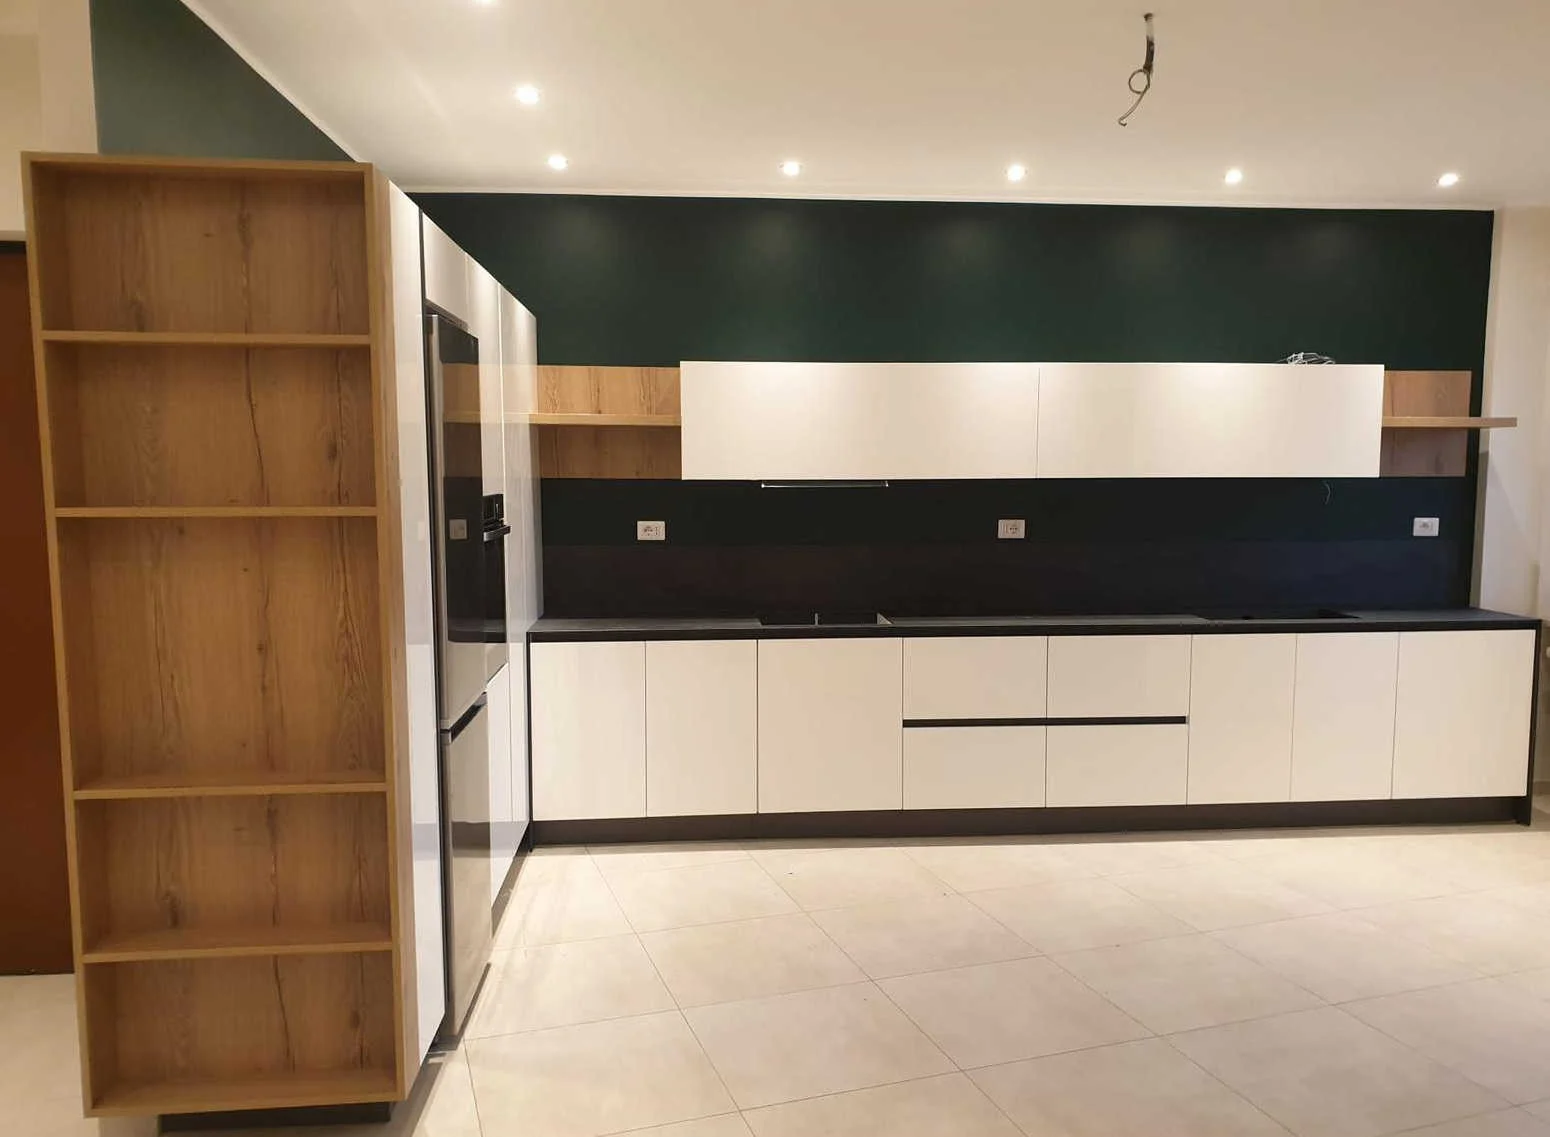 pavimento bianco per cucina bianca con elementi in legno che scaldano l'ambiente